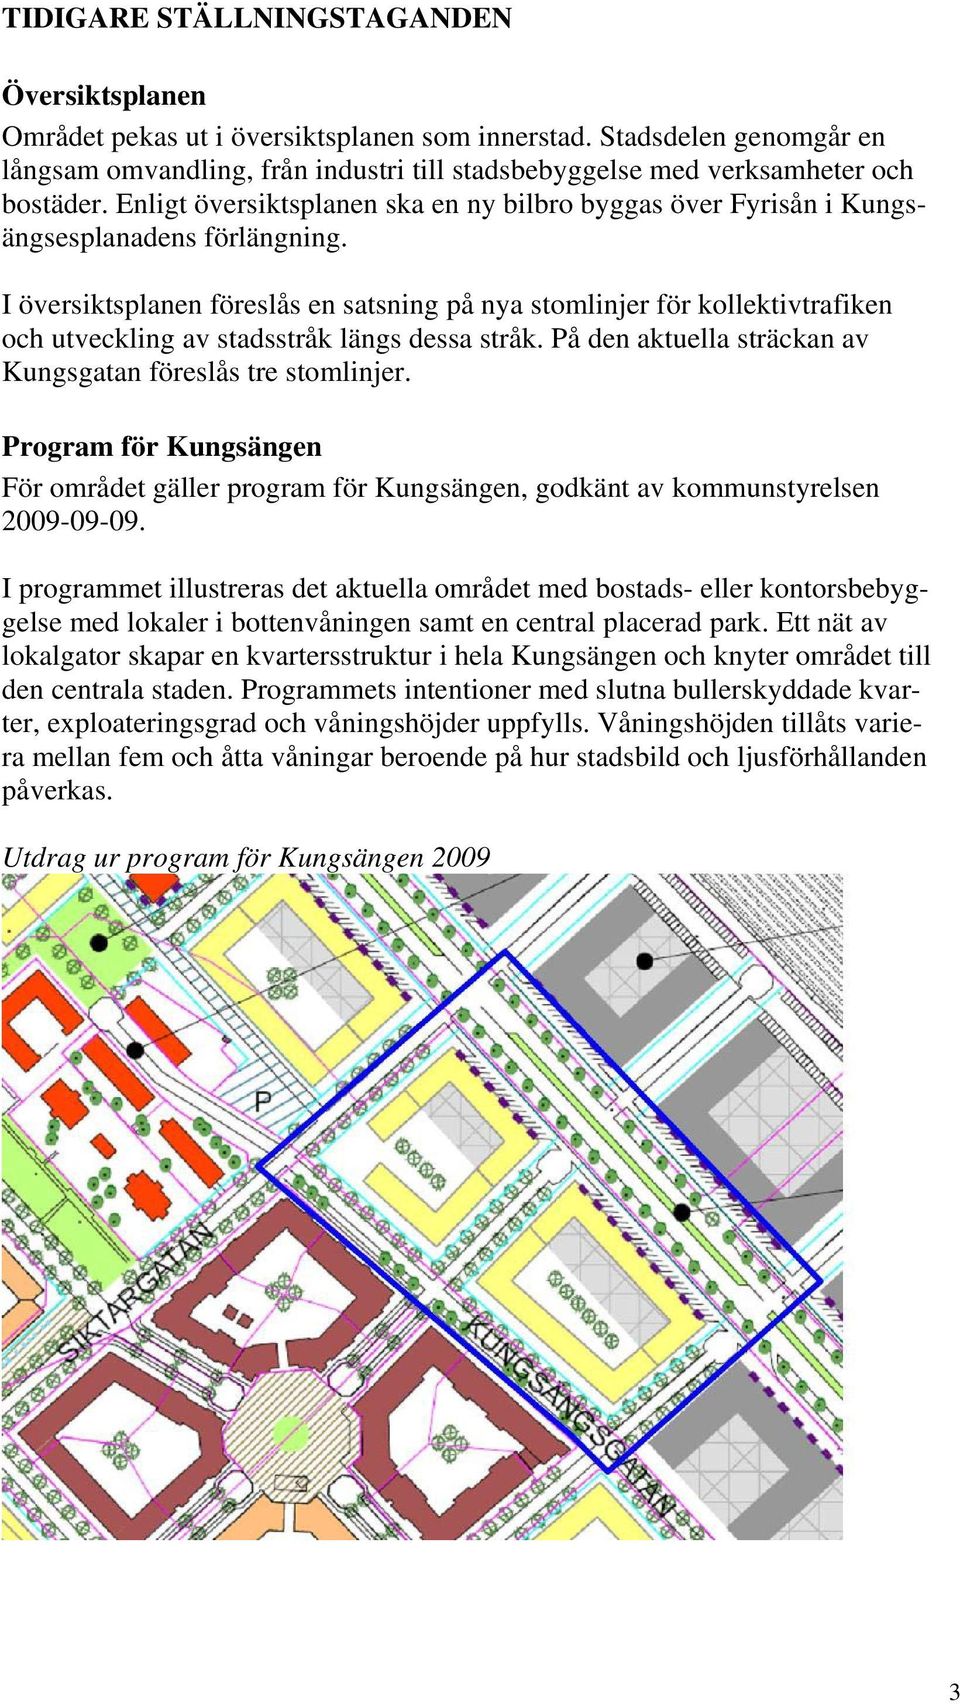 Enligt översiktsplanen ska en ny bilbro byggas över Fyrisån i Kungsängsesplanadens förlängning.